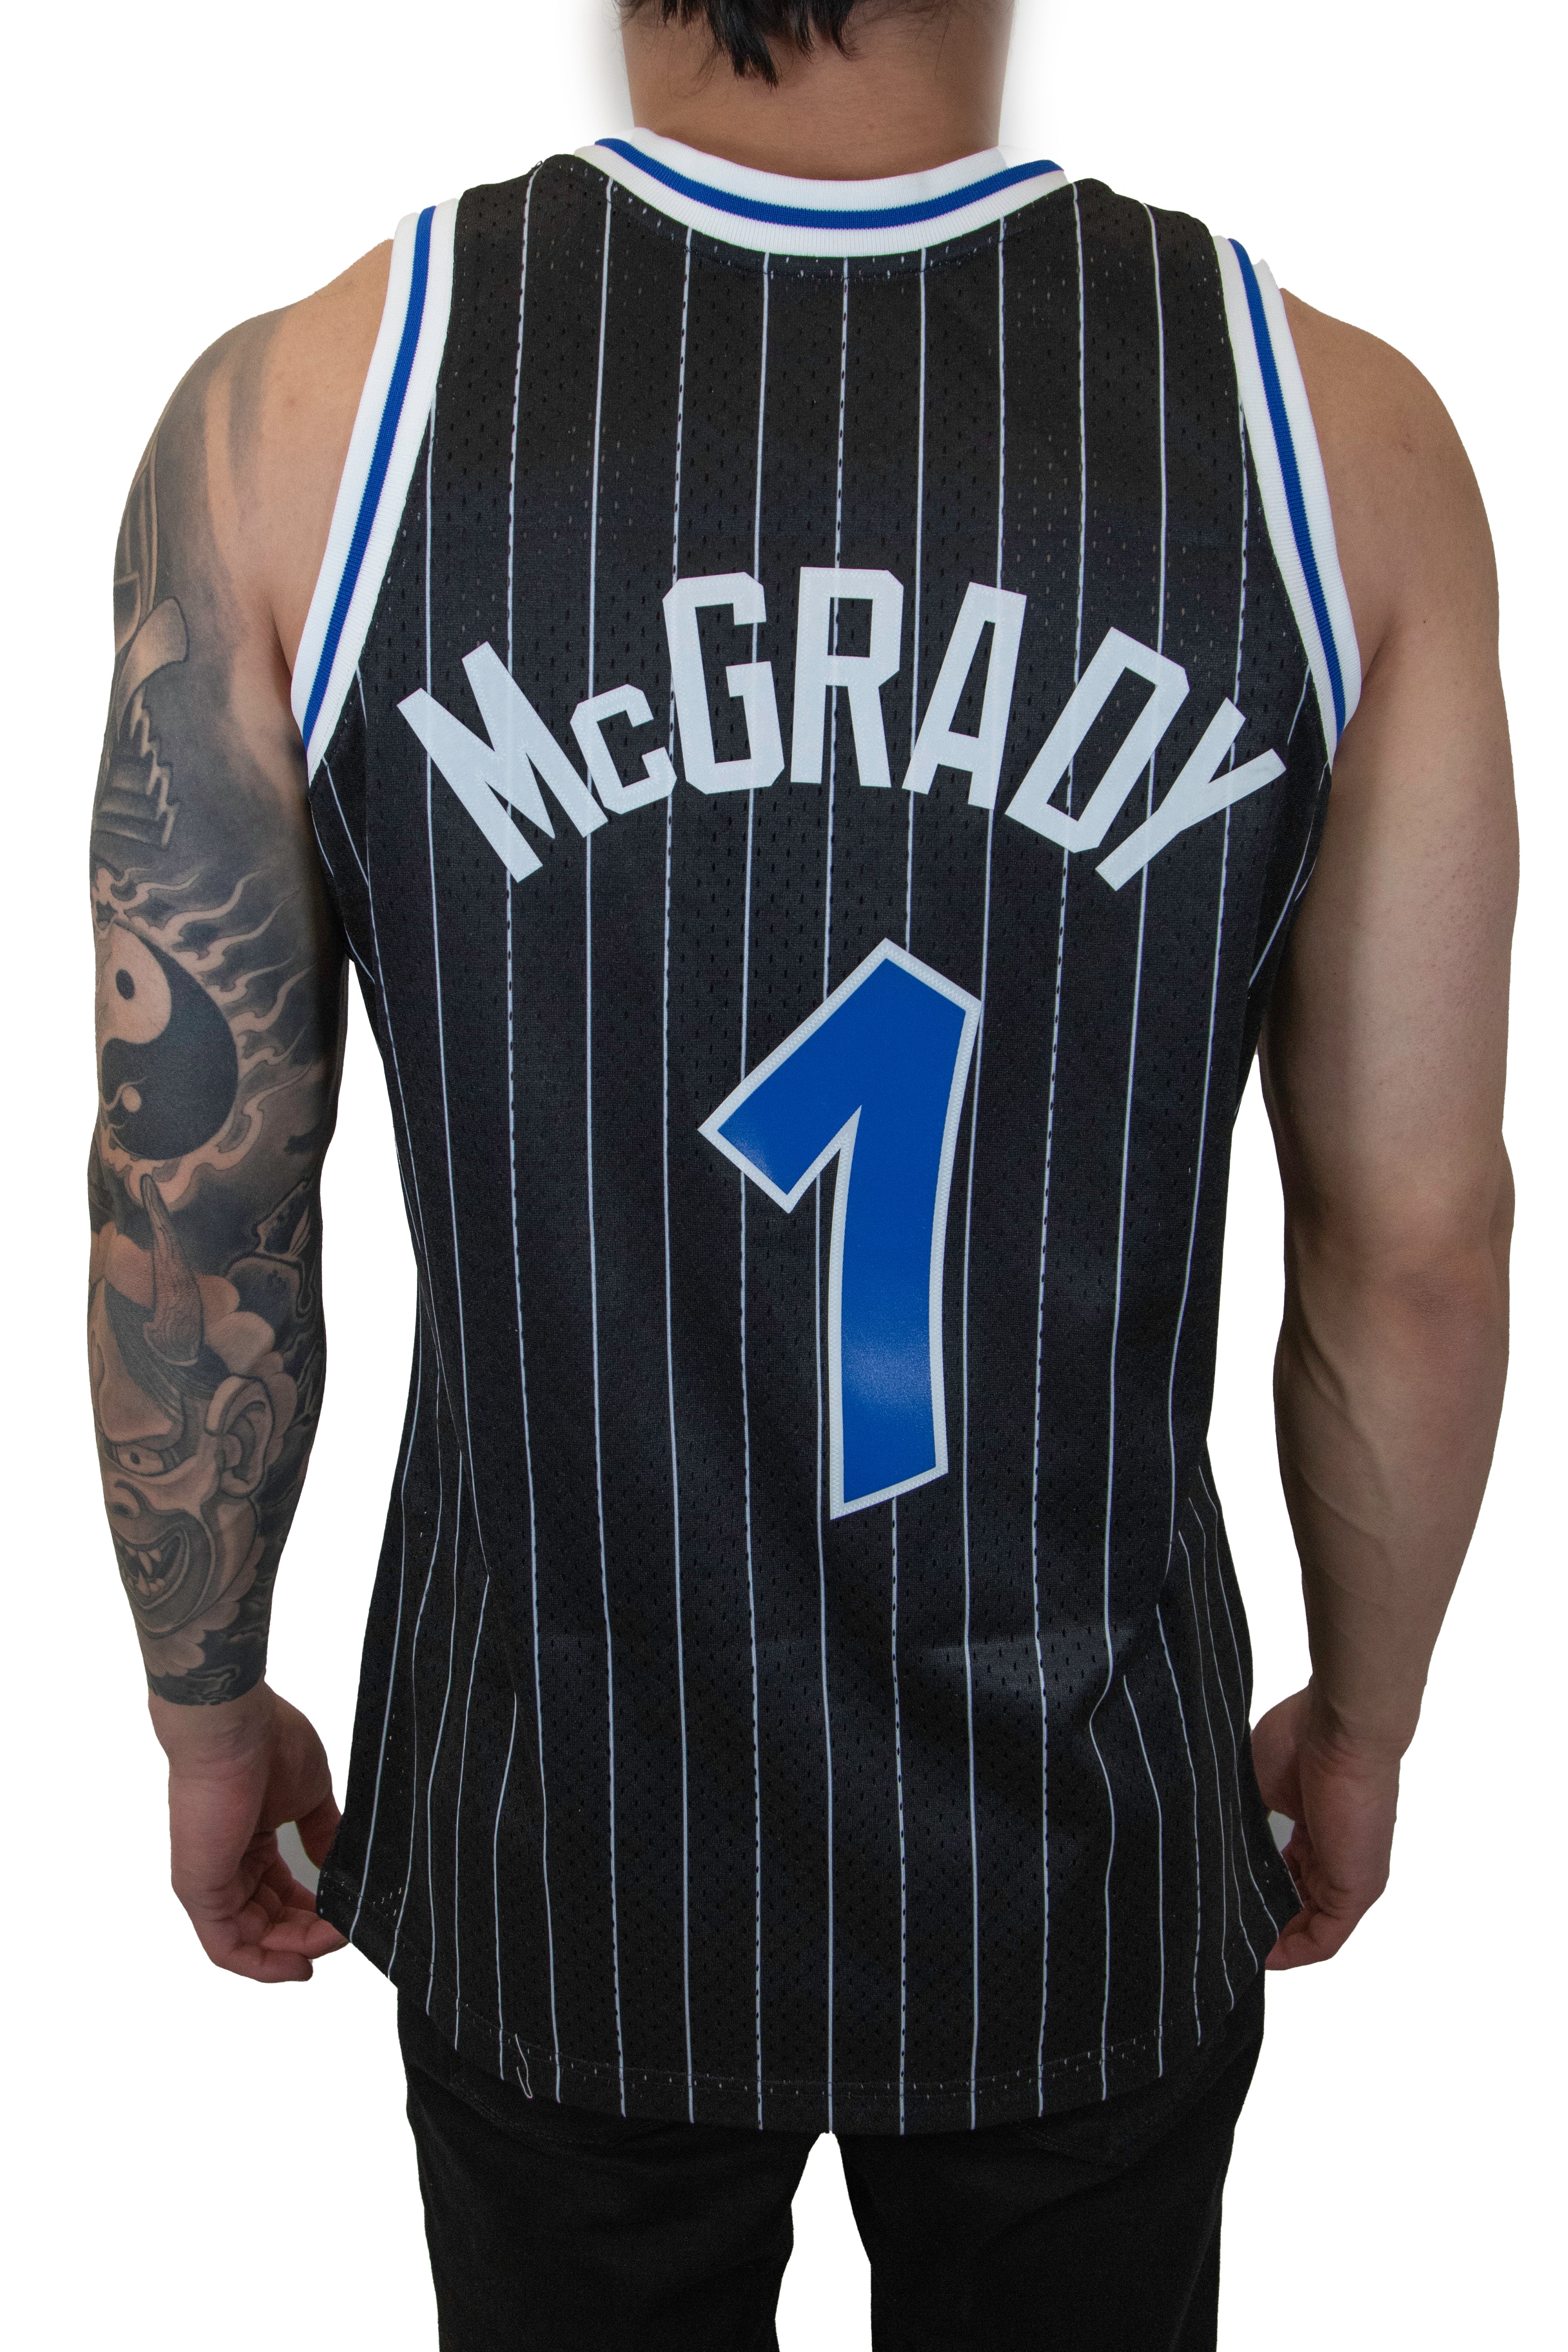 Tracy Mcgrady Jersey - NBA Orlando Magic Tracy Mcgrady Jerseys - Magic Store